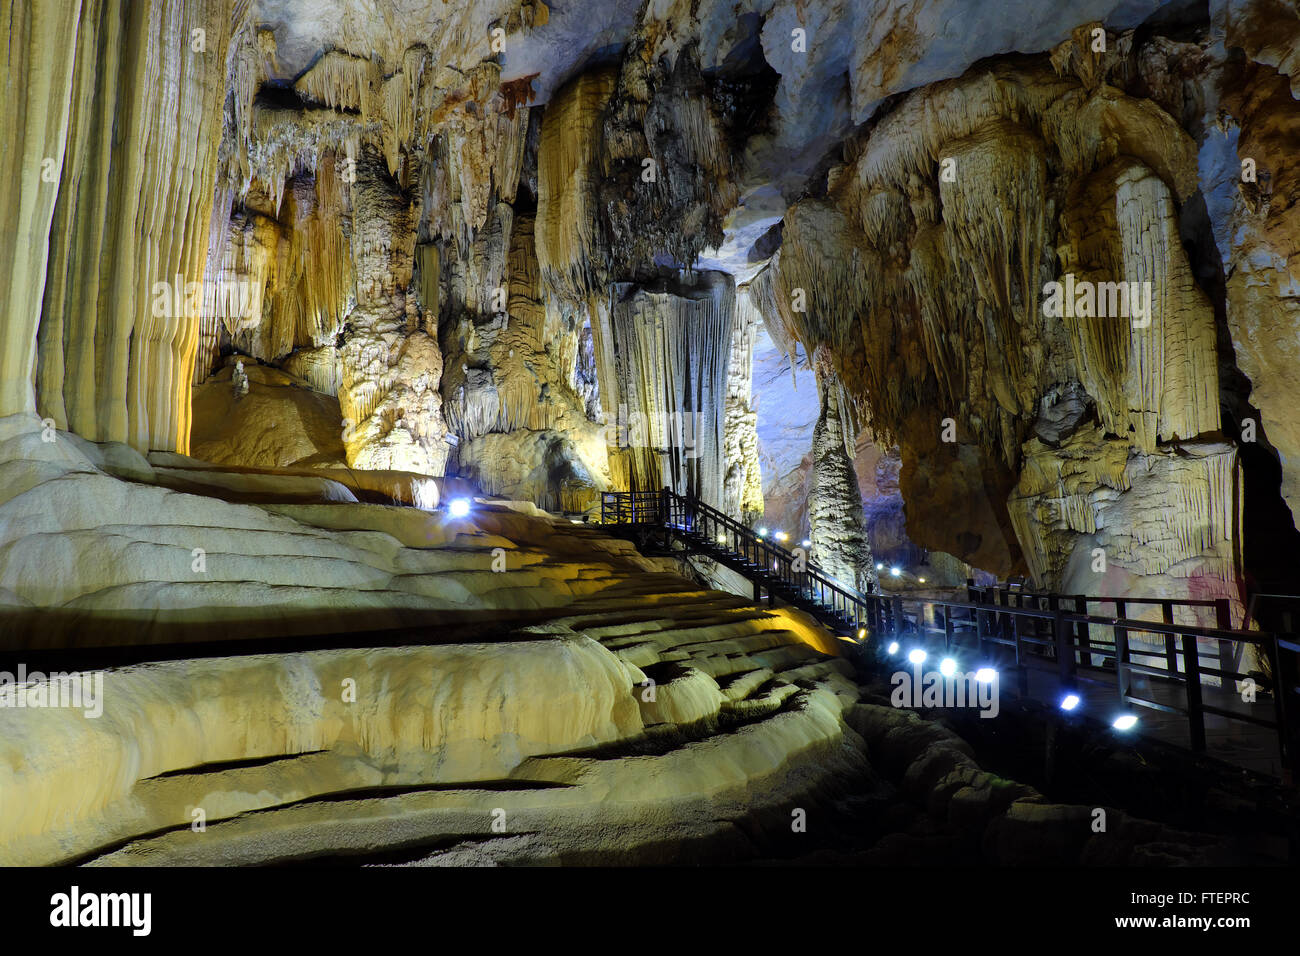 Paradise cave, eine erstaunliche, wunderbare Höhle bei Bo Trach, Quang Binh, Vietnam, unterirdische schöner Platz für die Reise Stockfoto